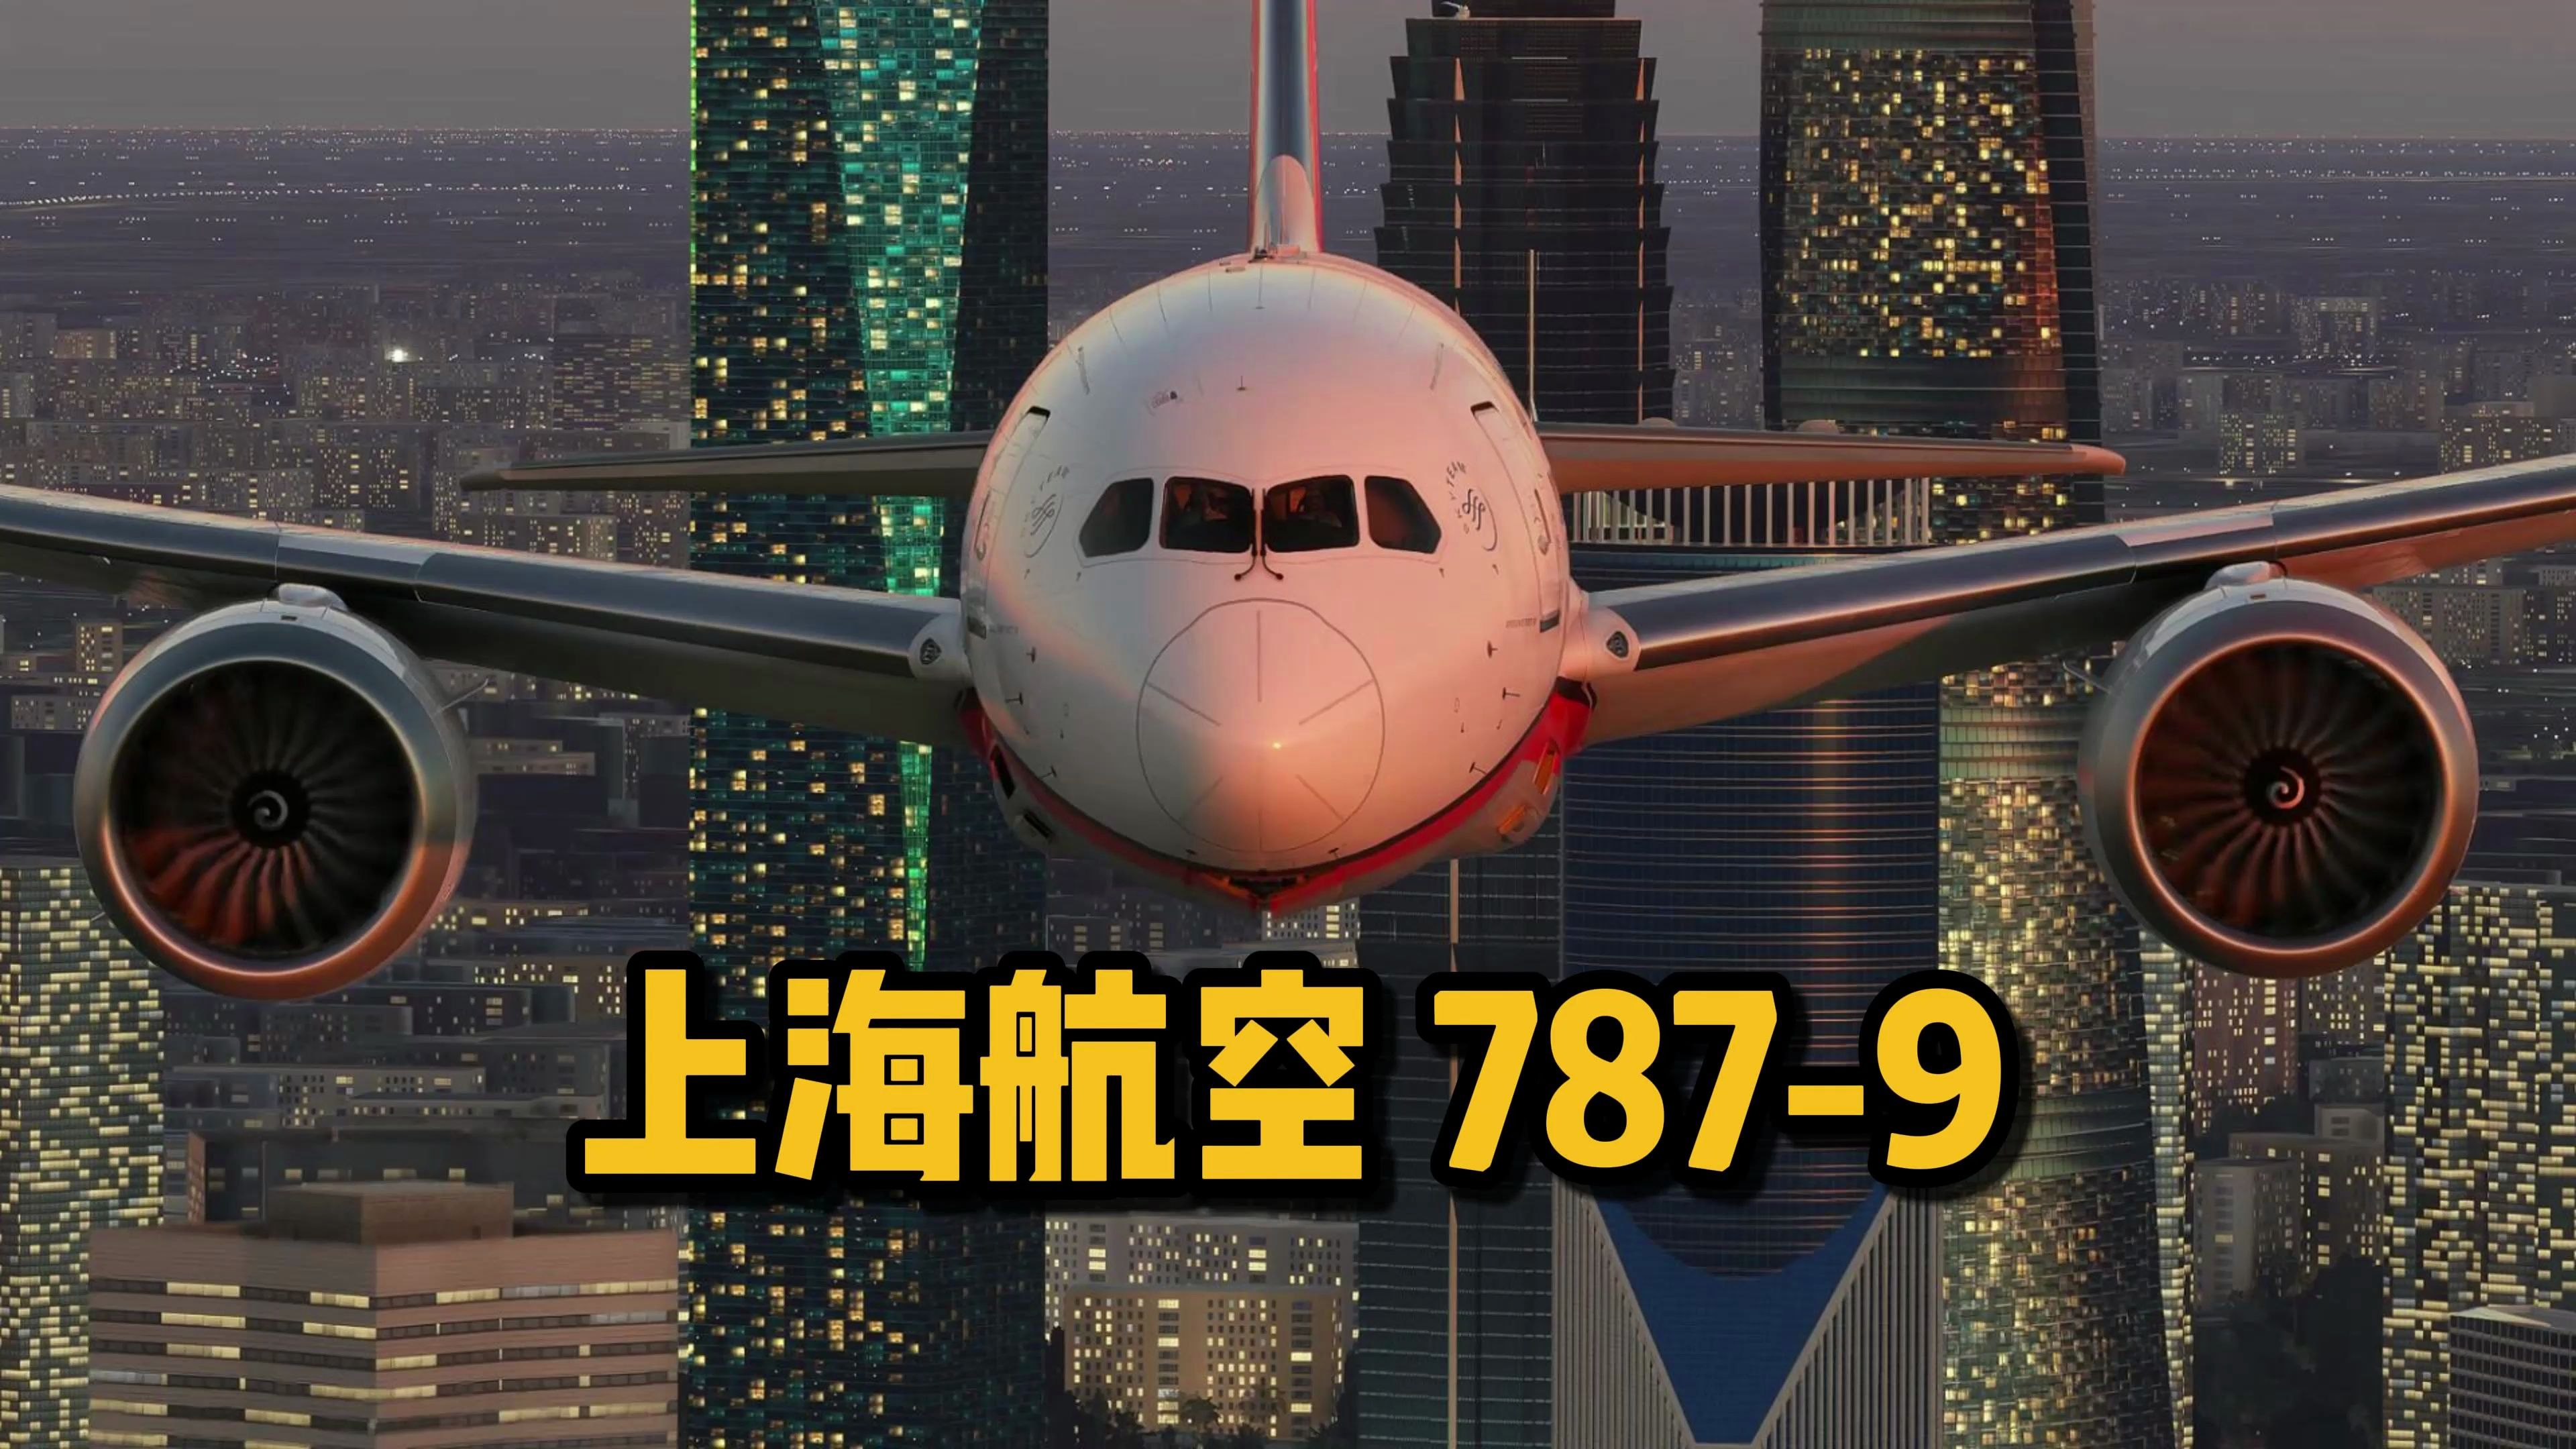 上海航空 波音787-9 飞越上海外滩上空